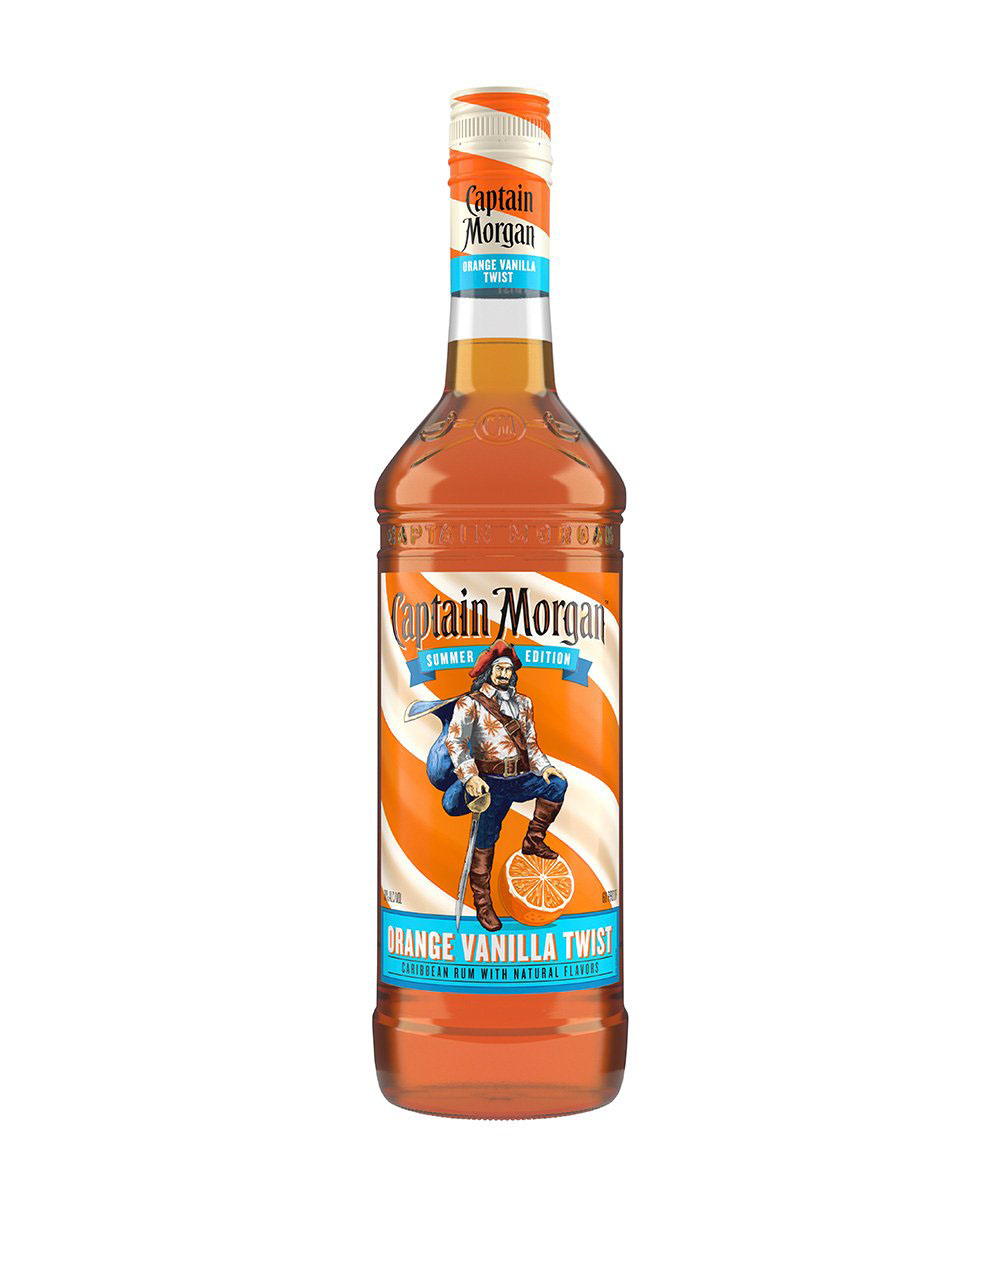 Captain Morgan Orange Vanilla Twist